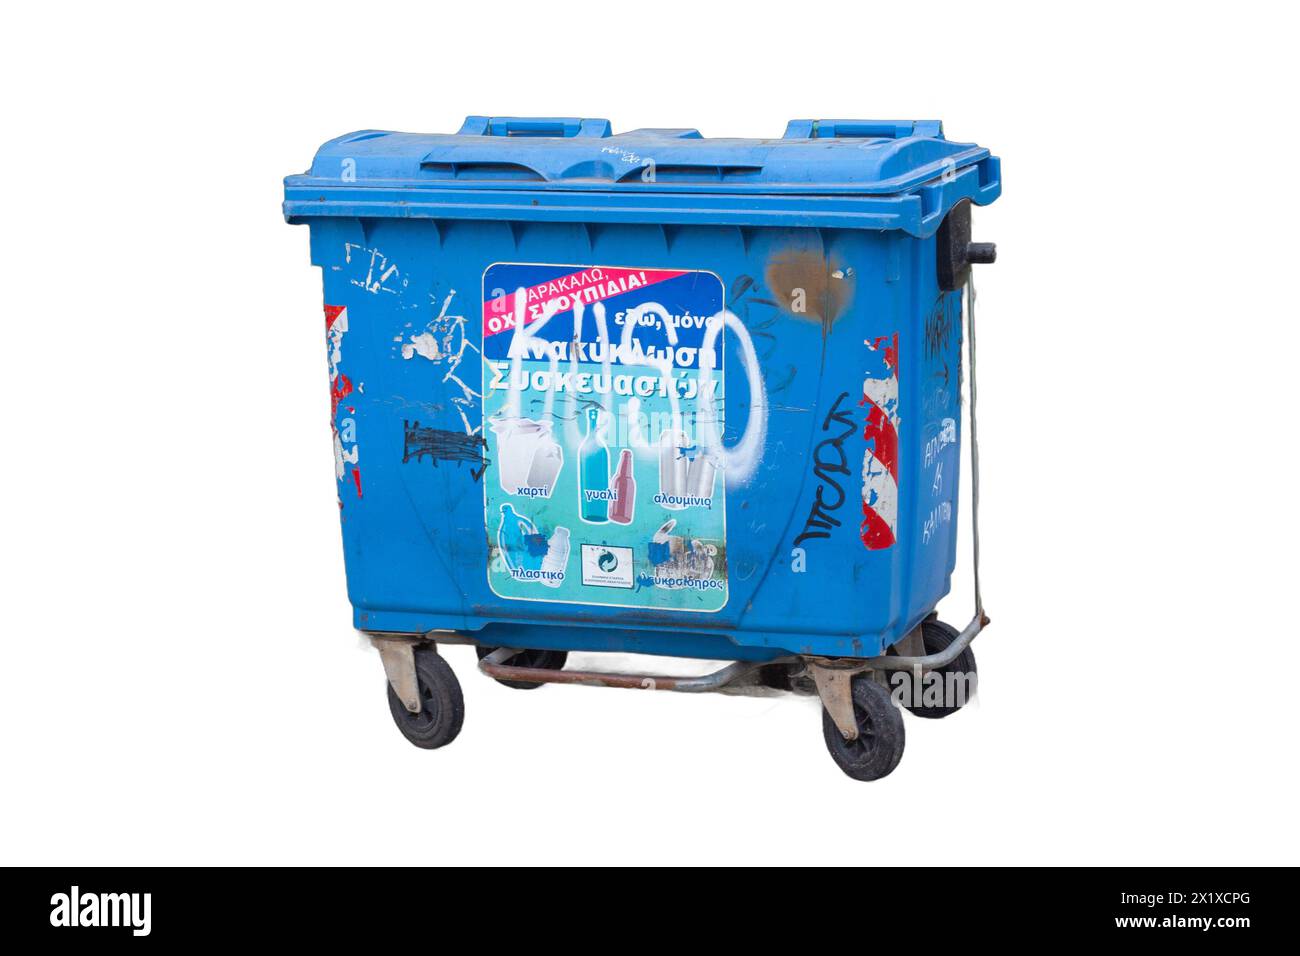 Isolierte Mülltonnen in verschiedenen Farben und Stilen, bereit für Abfallentsorgungsentwürfe, Umweltkampagnen und urbane Szenen Stockfoto